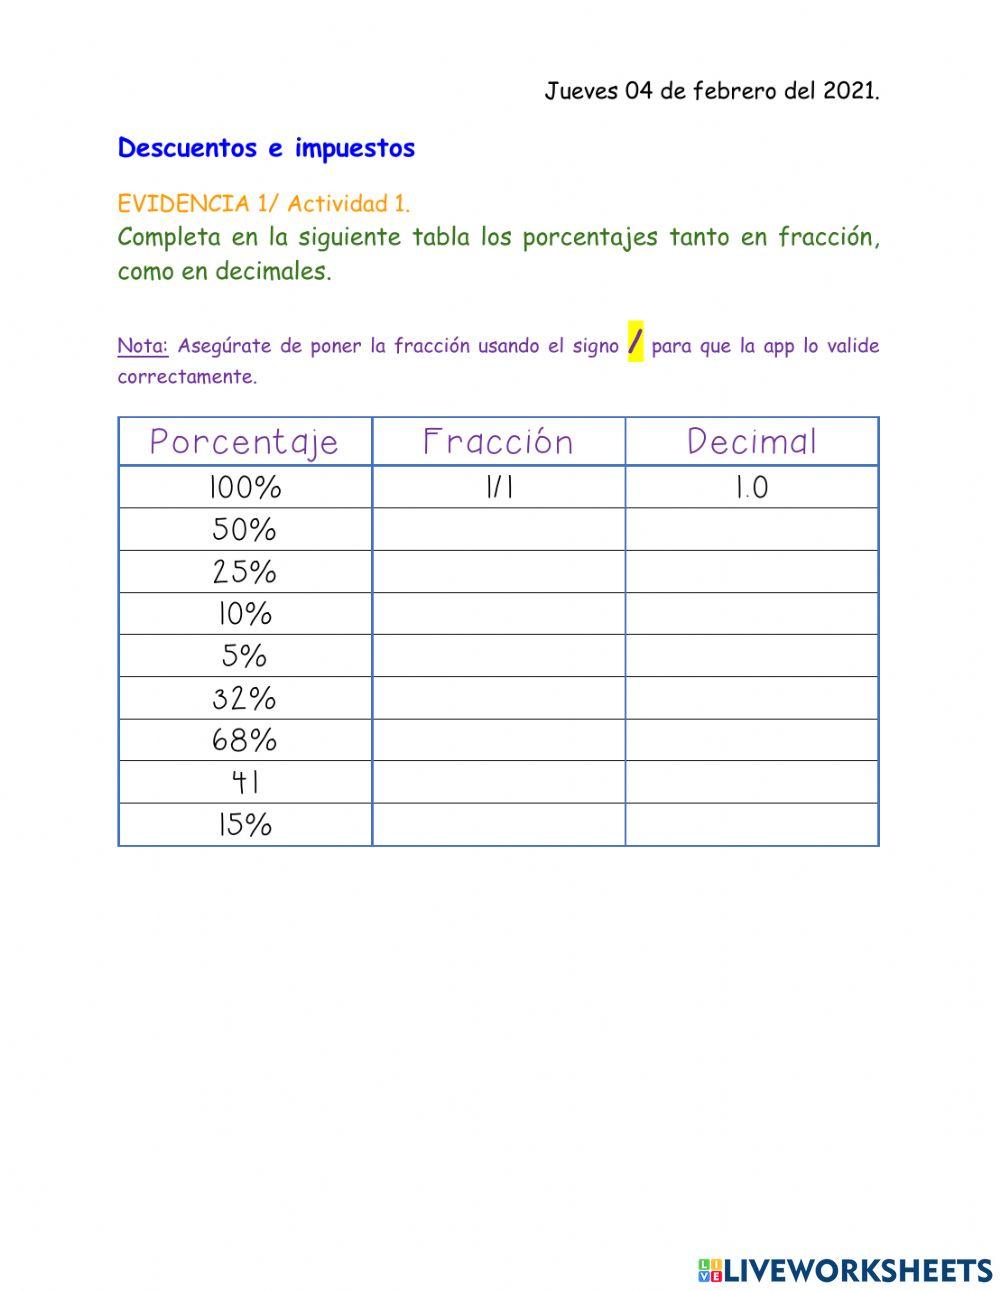 Porcentaje, fracción y decimal